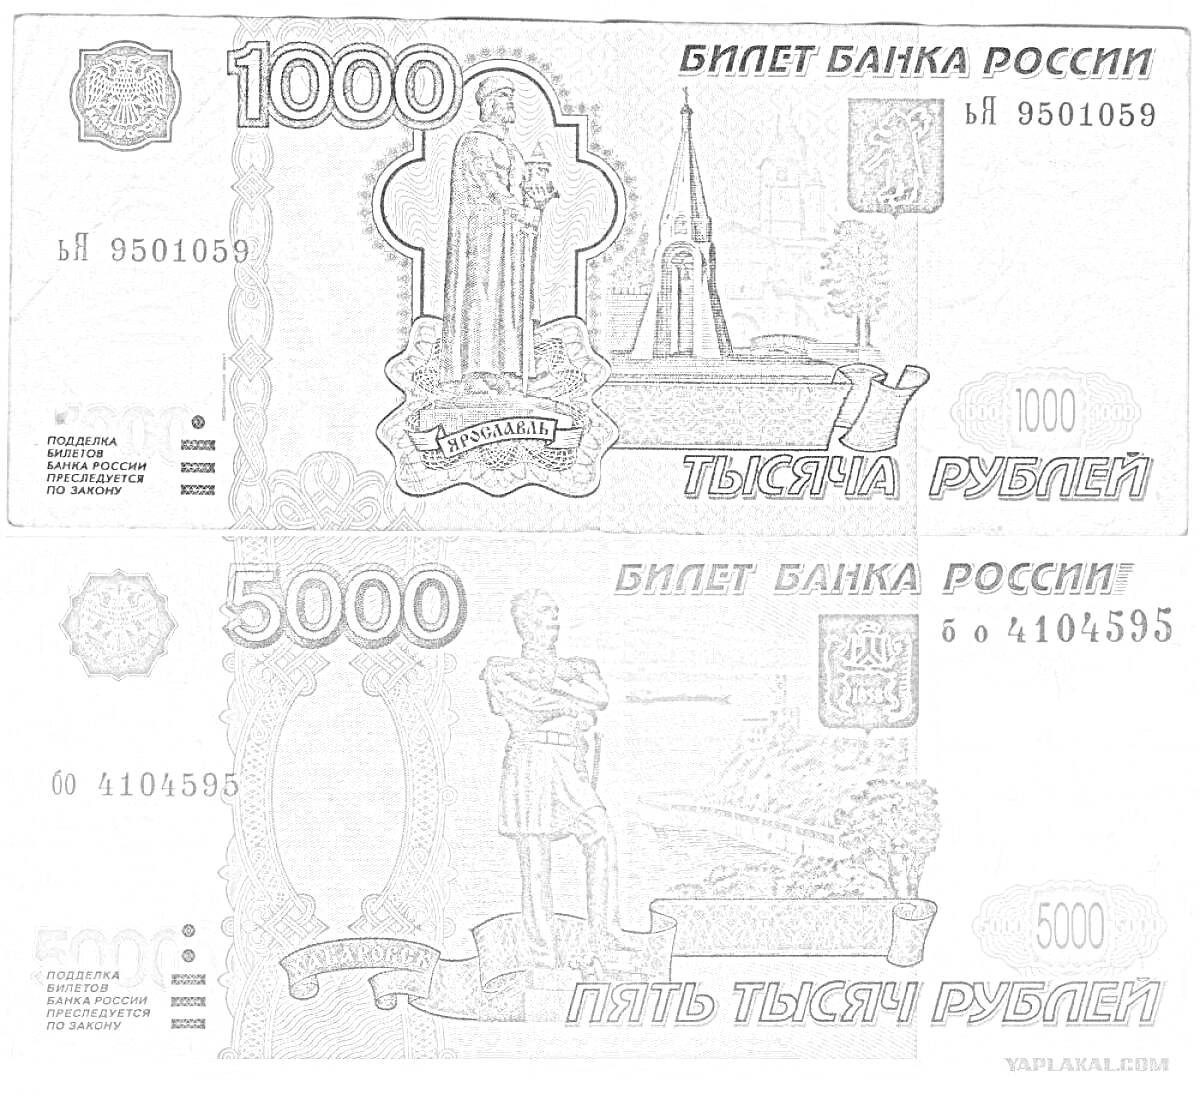 Раскраска Раскраска банкнот номиналом 1000 и 5000 рублей с изображениями памятника и архитектурных объектов